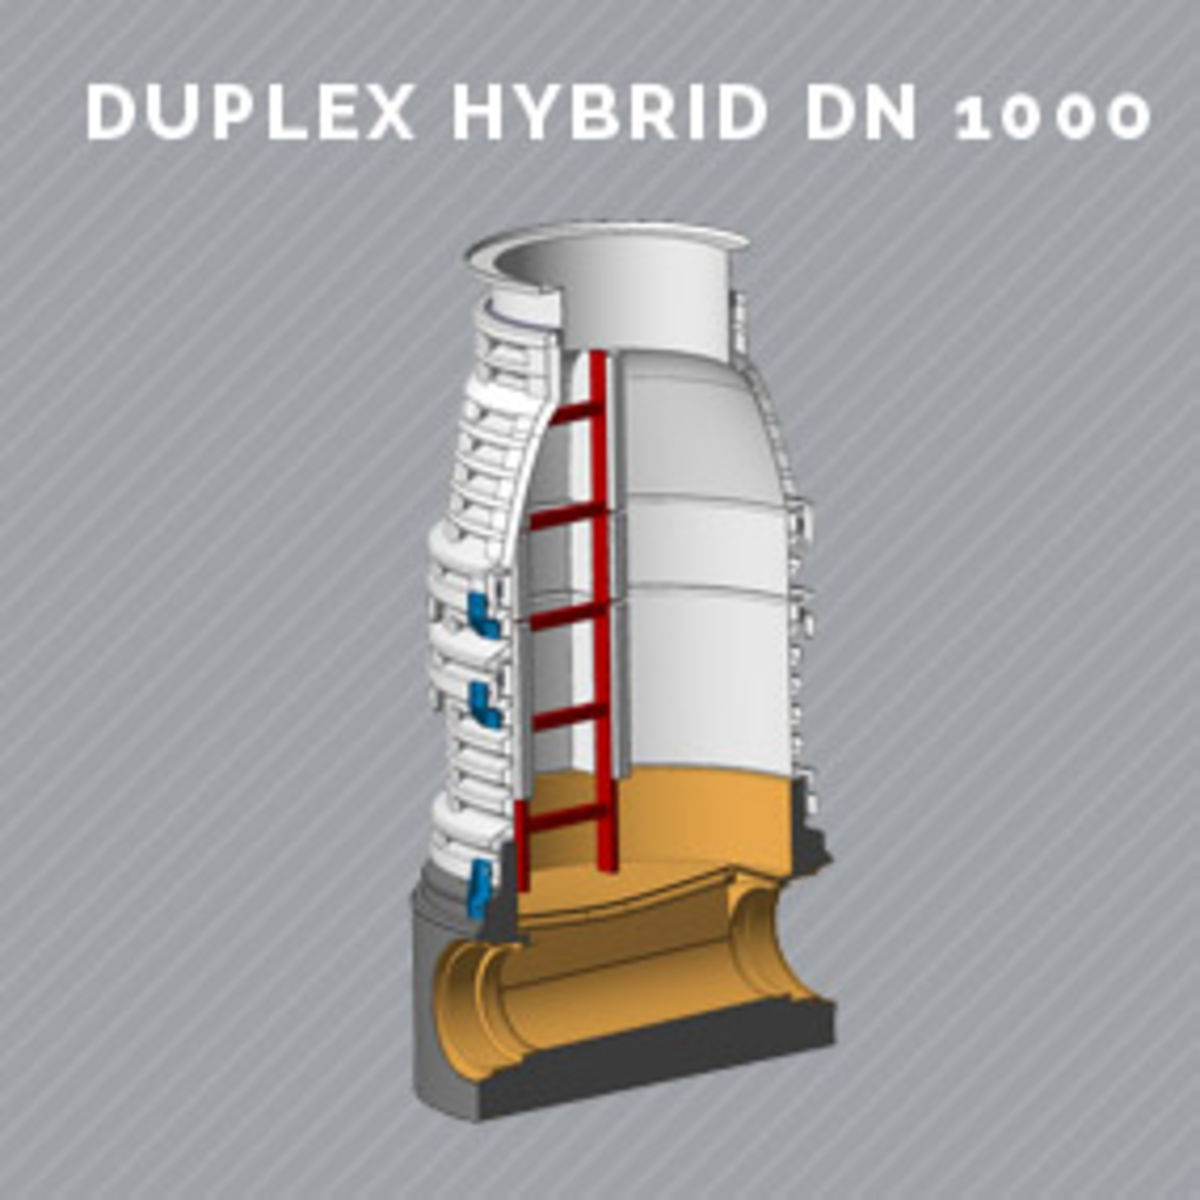 predl duplex hybrid 1000